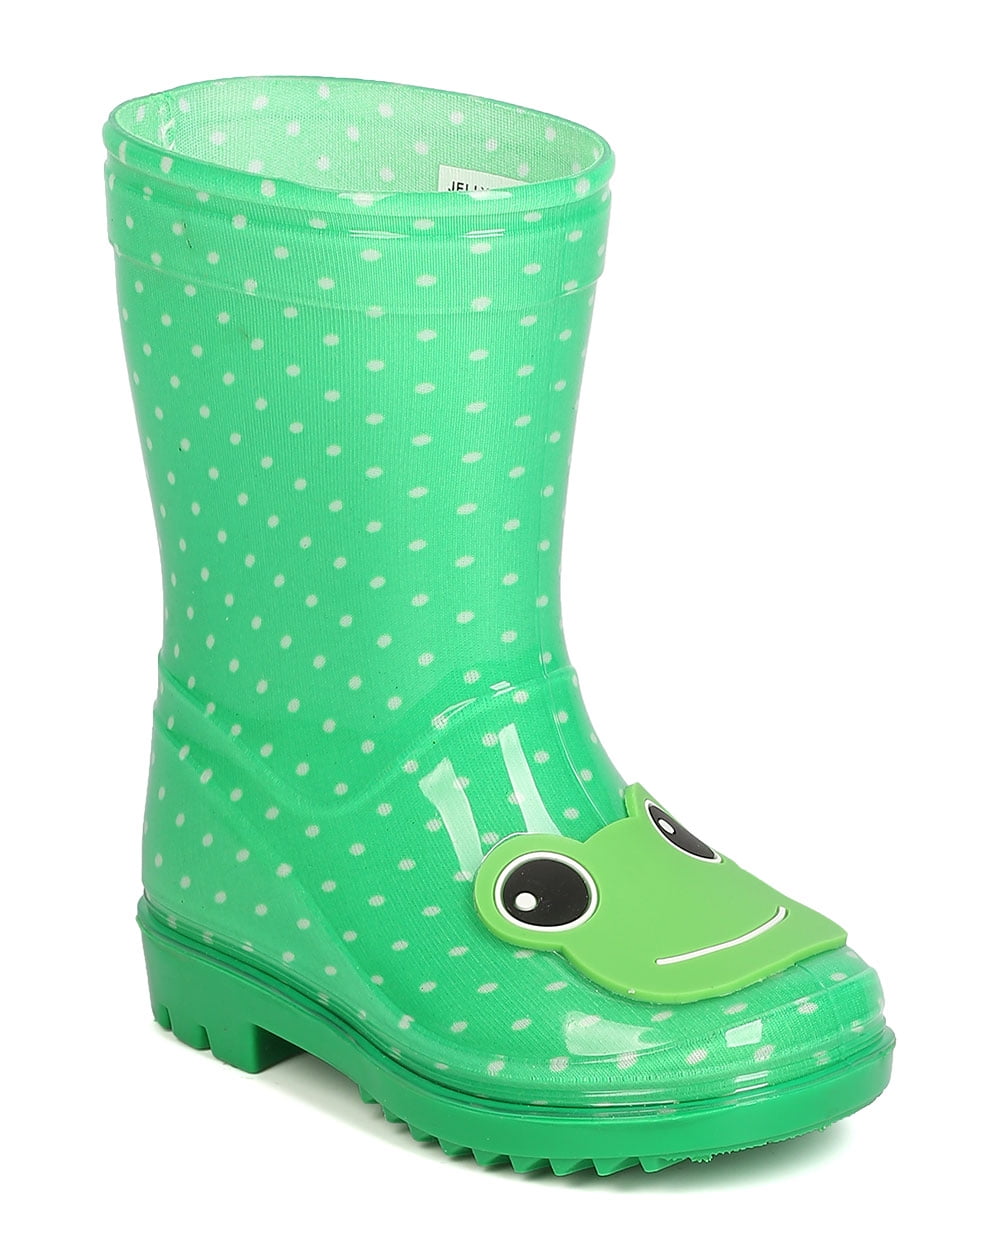 Toddler Blue EF69 Kids Boy Girl Polka Dot Jelly Round Toe Pull On Rain Boot